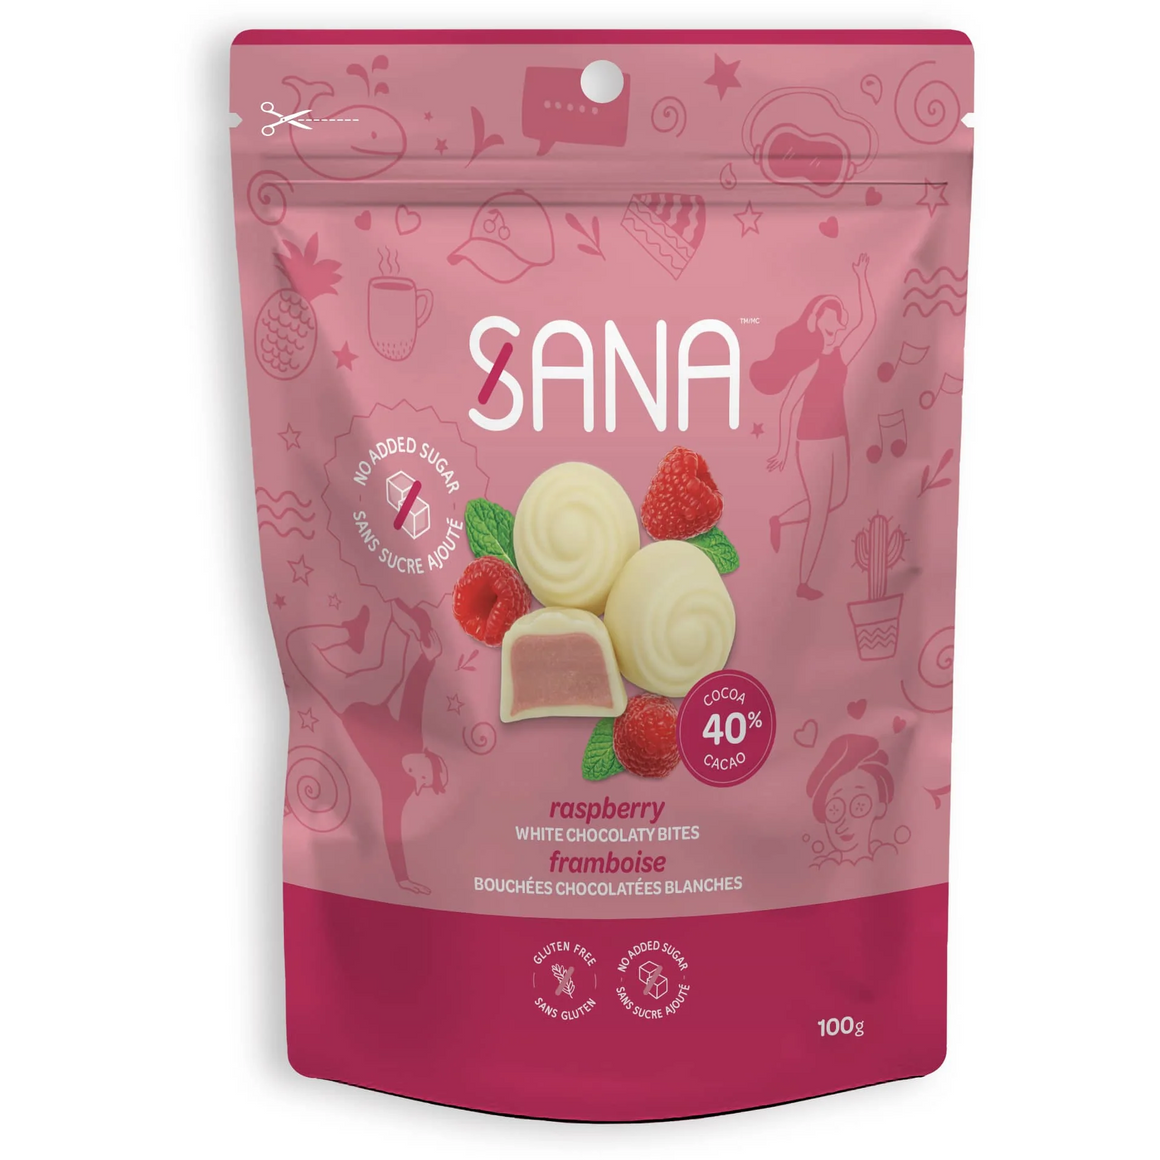 Sana - Chocolaty bites - White Chocolate Raspberry - 100g